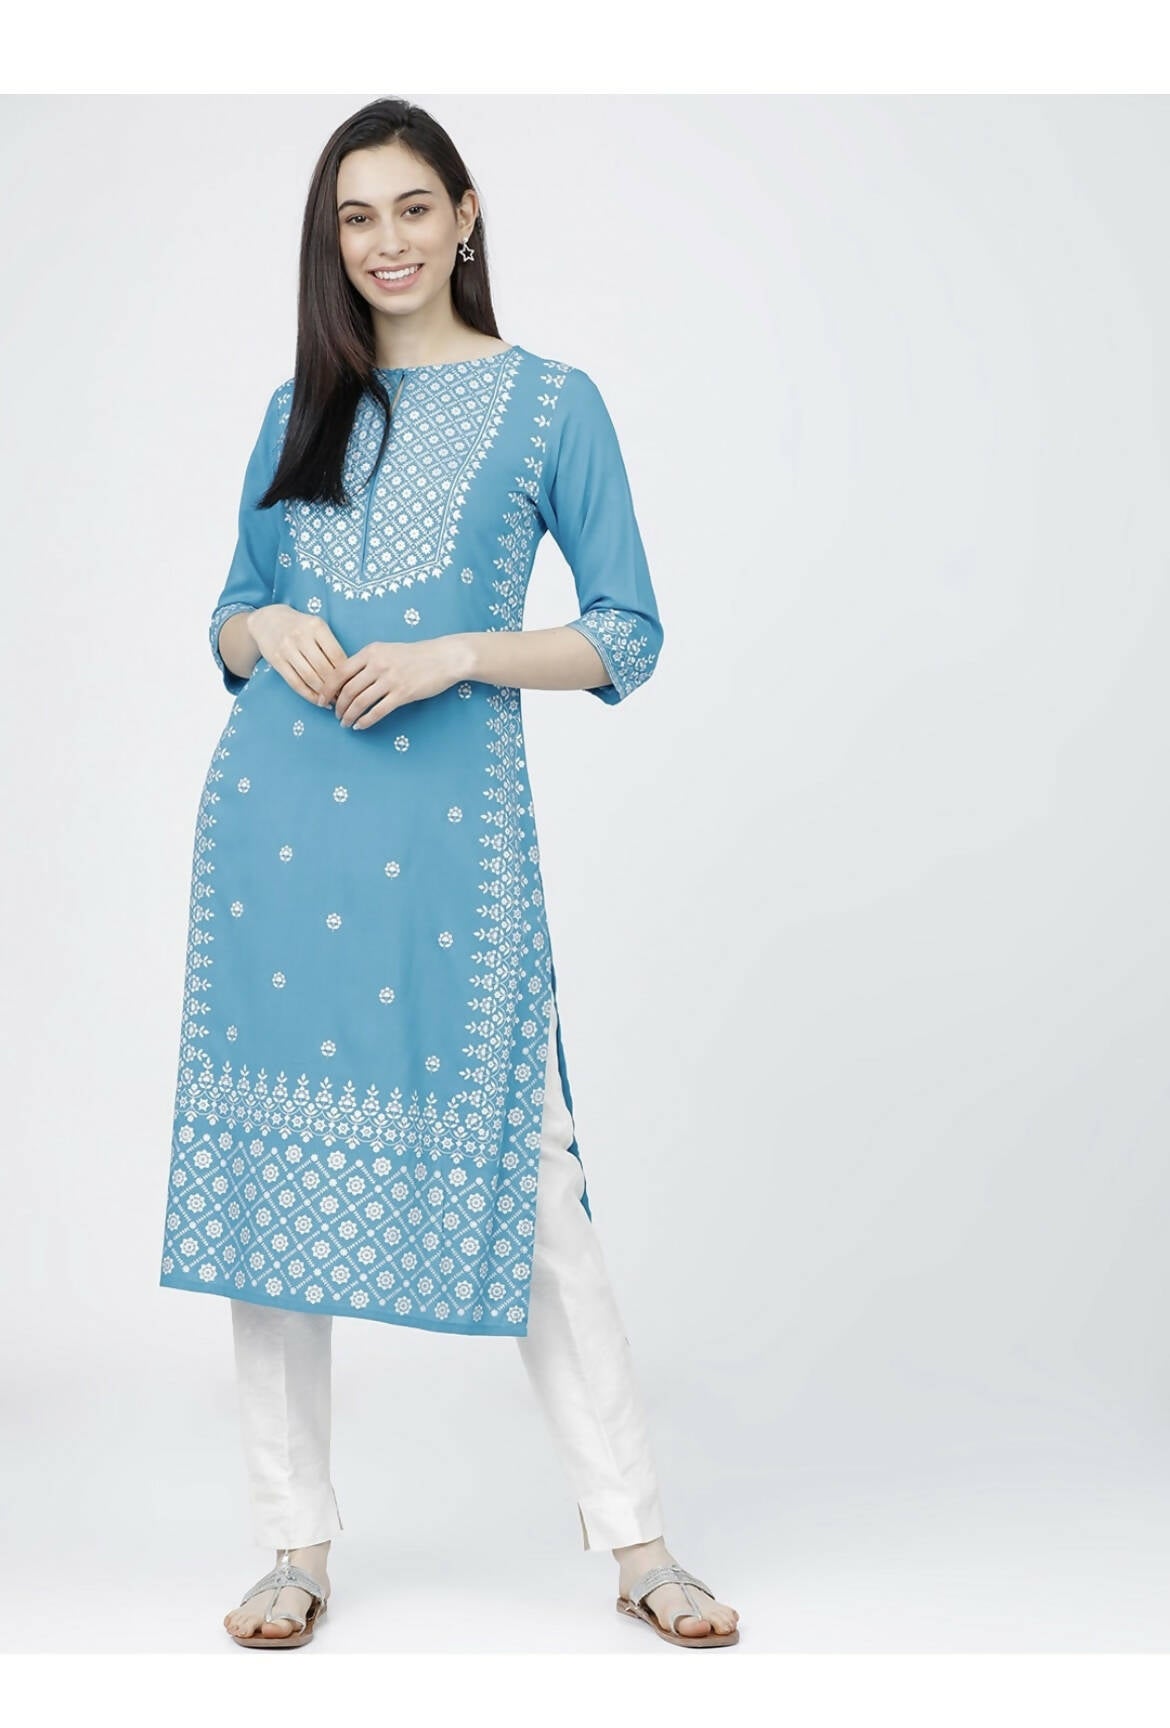 Cheera Embellished Daily Wear Cotton Blend Kurta - Sky Blue - Distacart